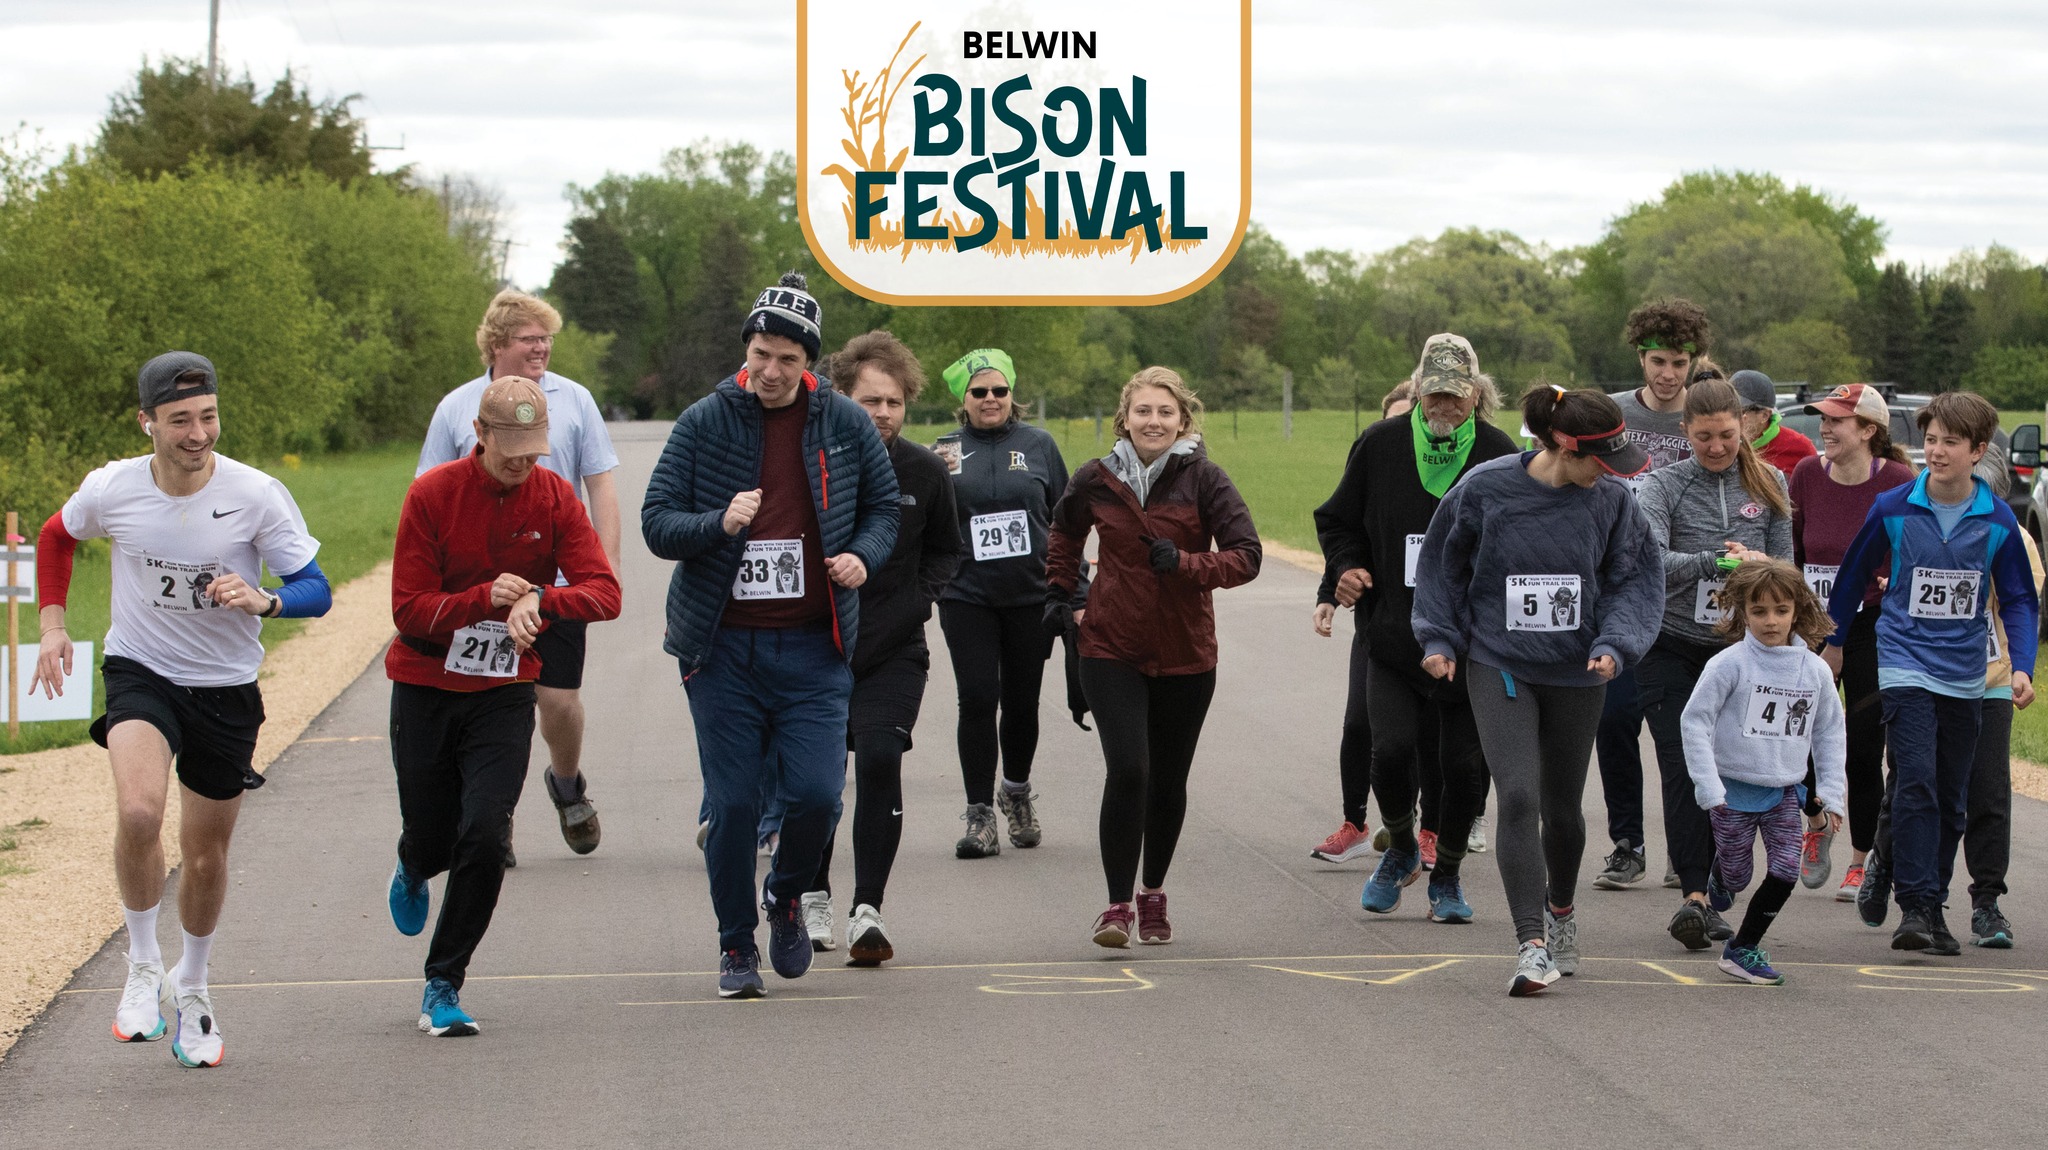 Belwin Bison Festival 5K Run